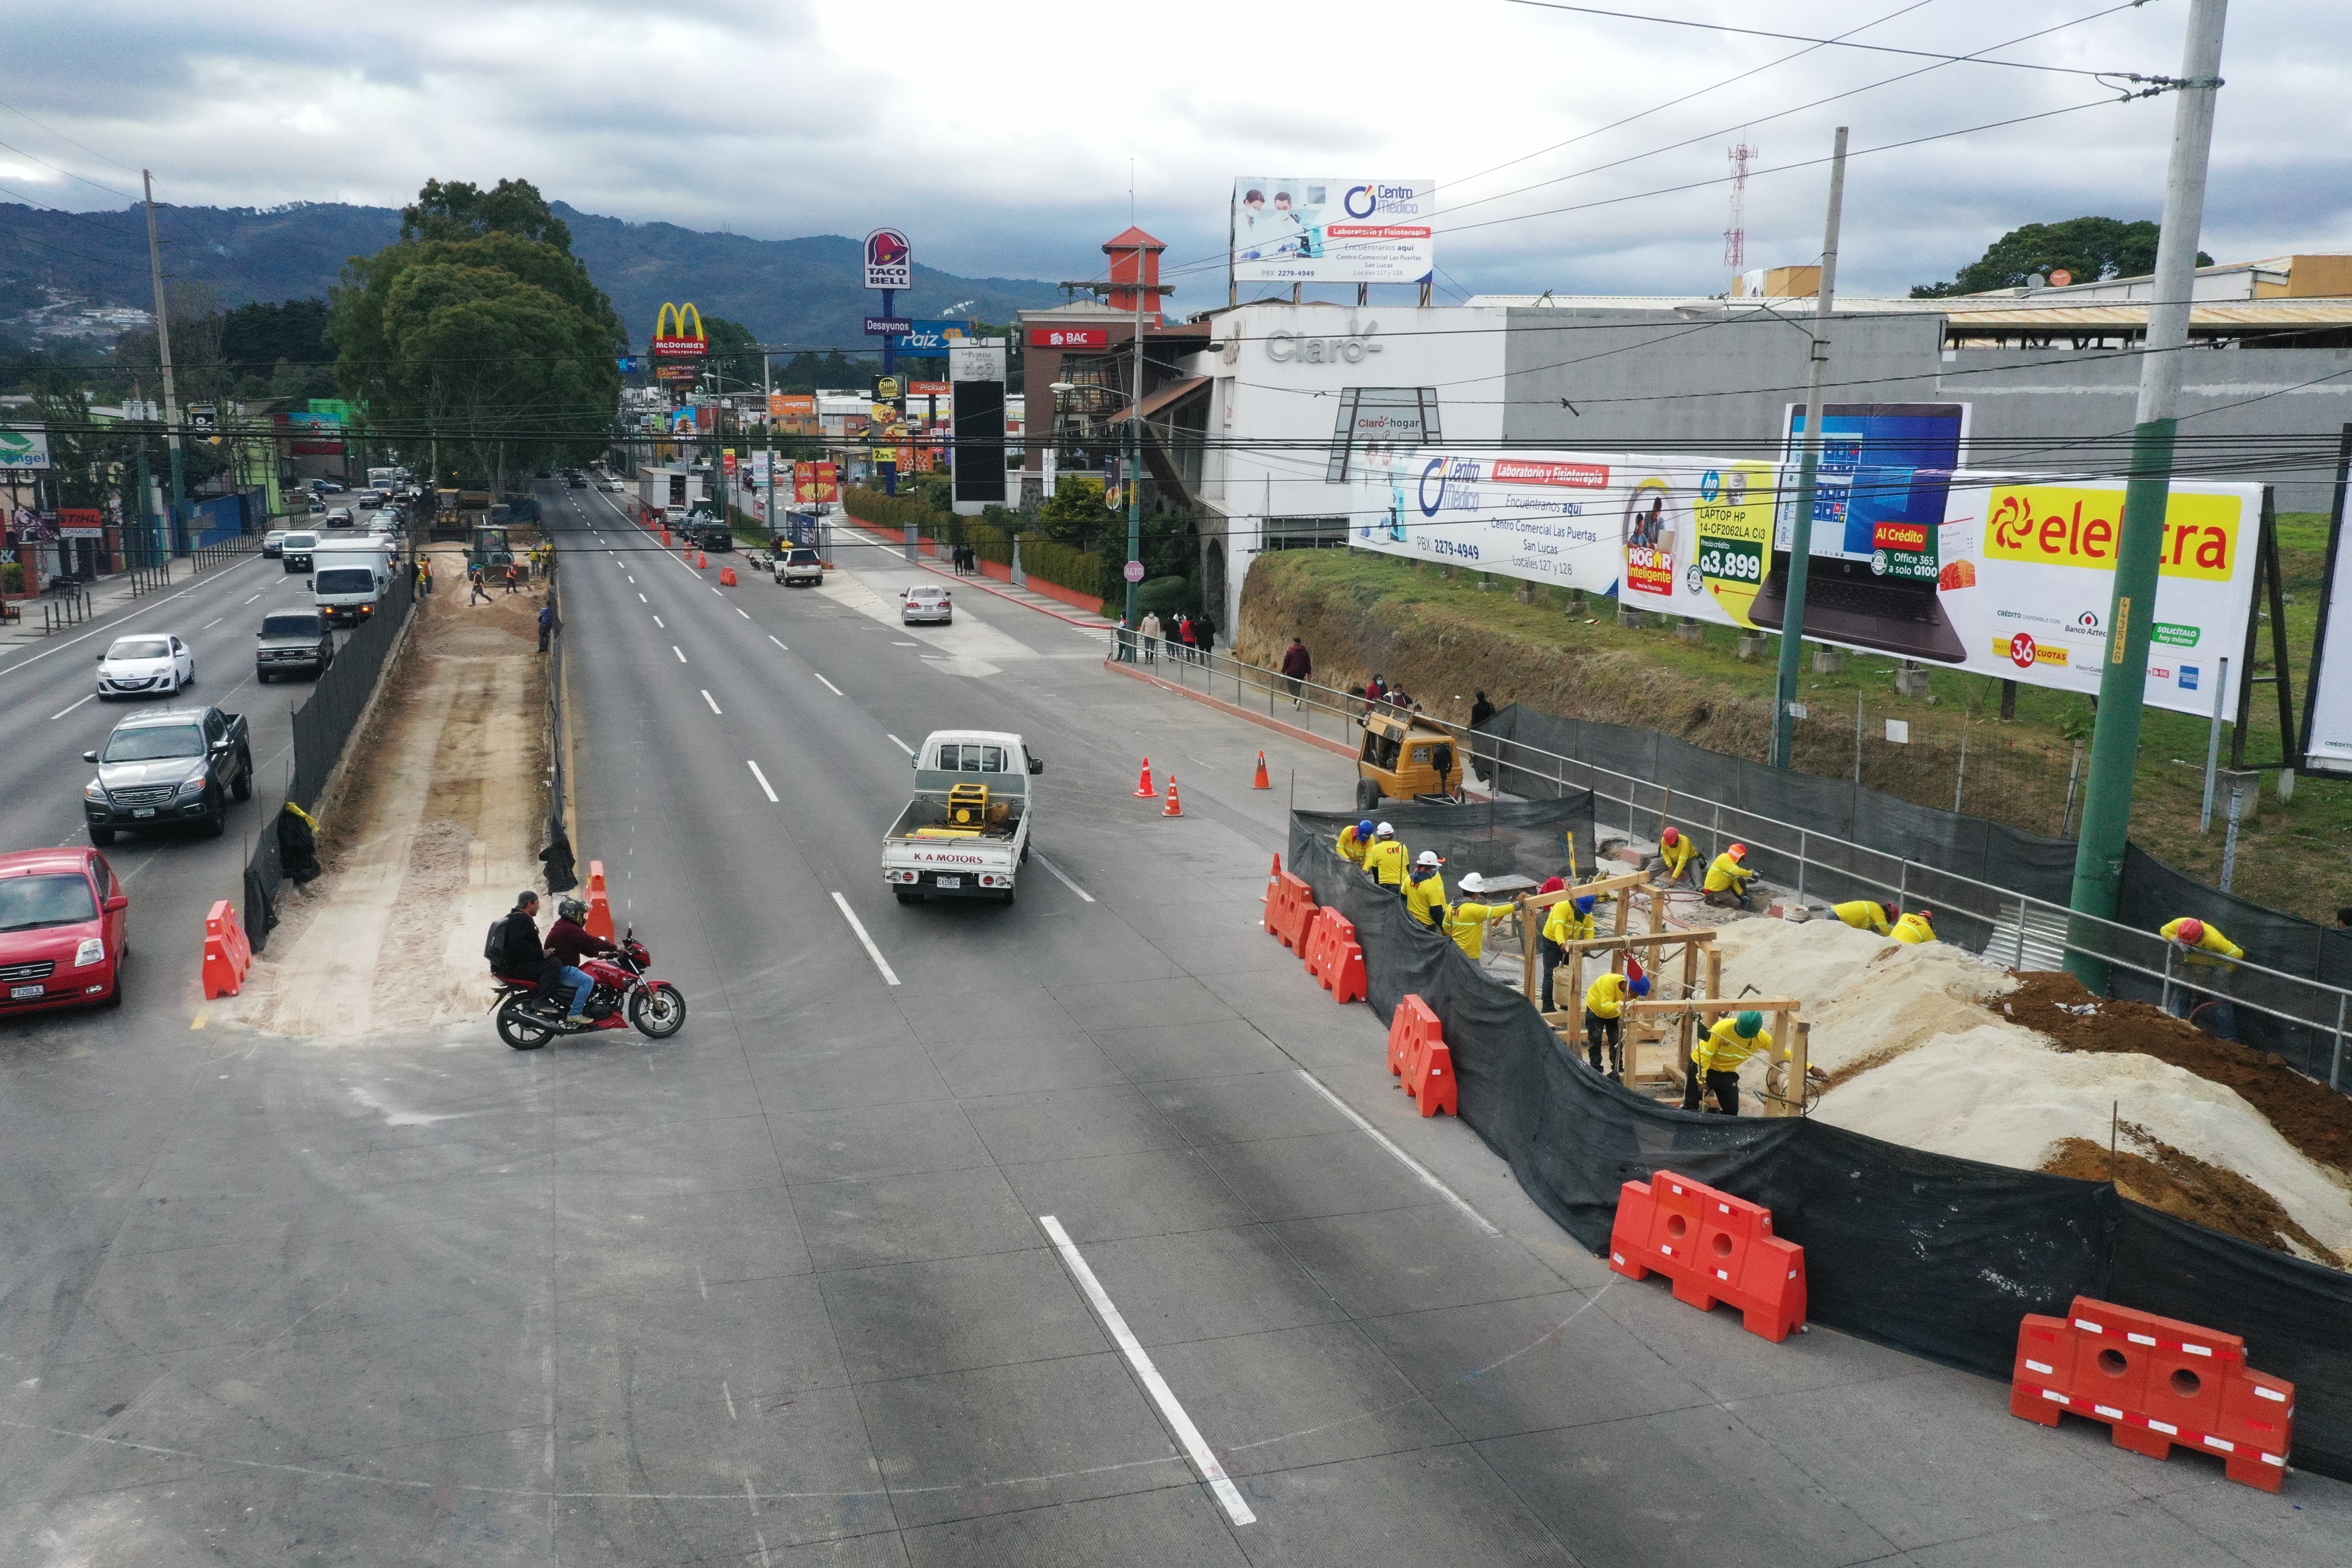 Menos del 15% de la ampliación presupuestaria para el CIV propuesta por diputados se utilizarían para inversión en carreteras. Construcción de un viaducto en San Lucas Sacatepéquez. (Foto Prensa Libre: Elmer Vargas)